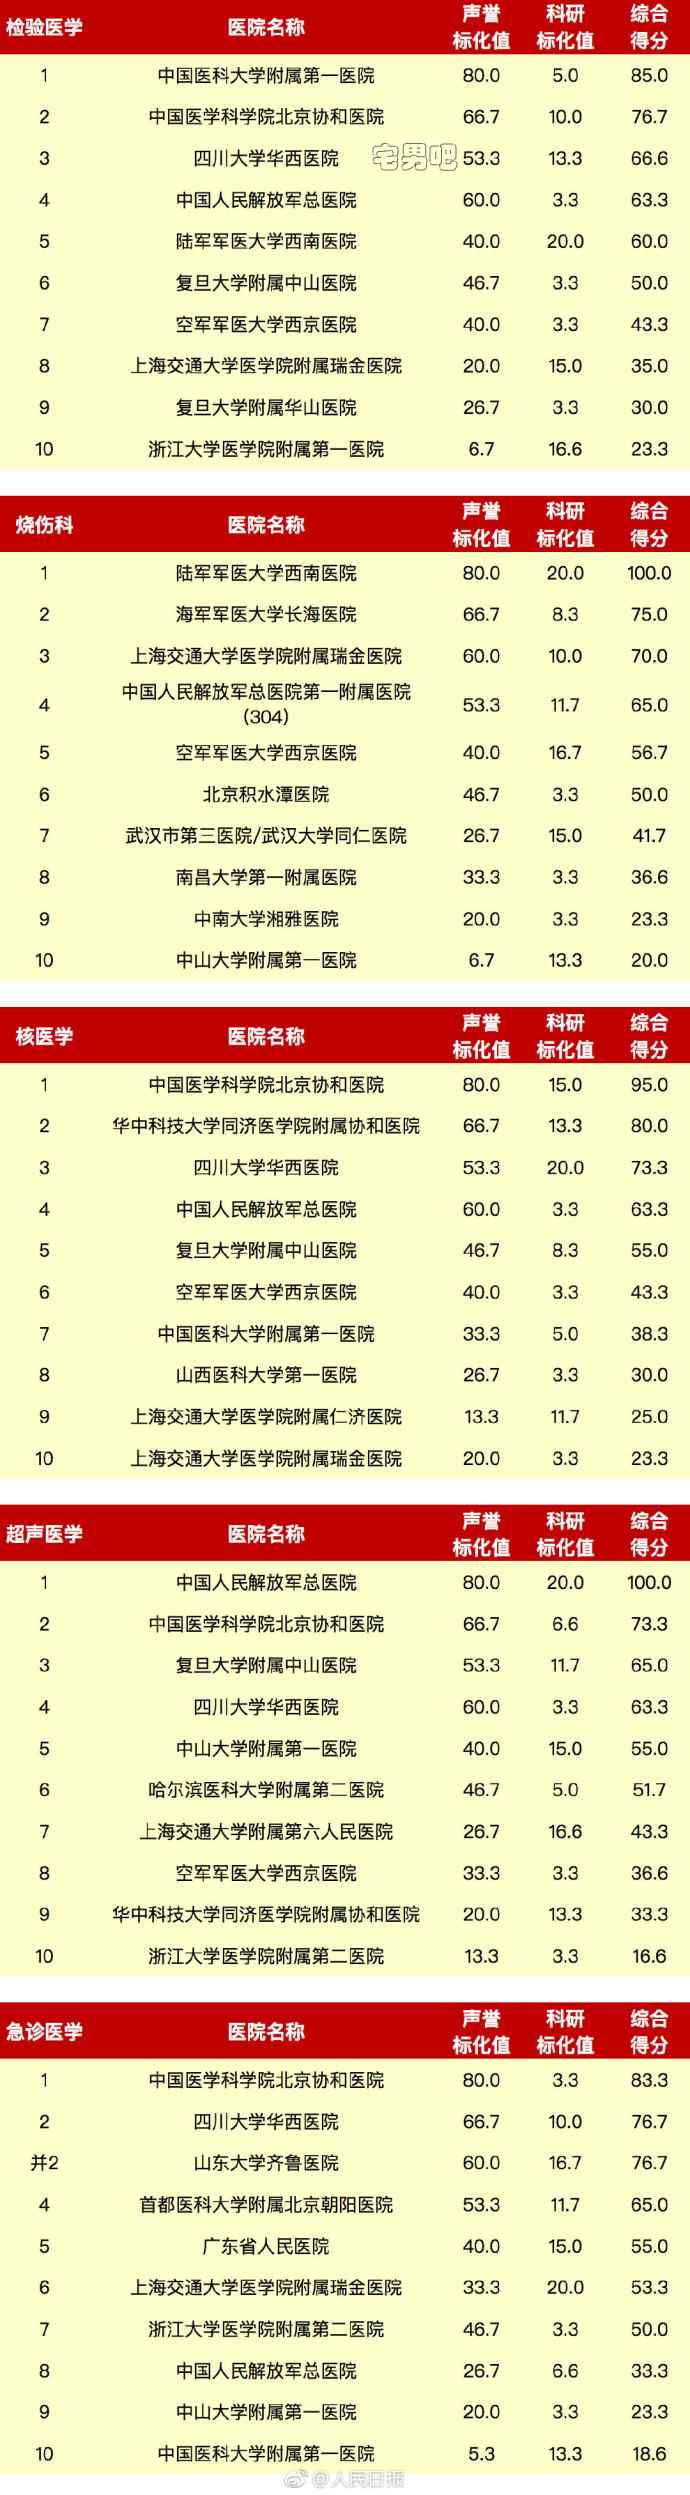 中国医院排行榜 2017年度全国医院排行榜 